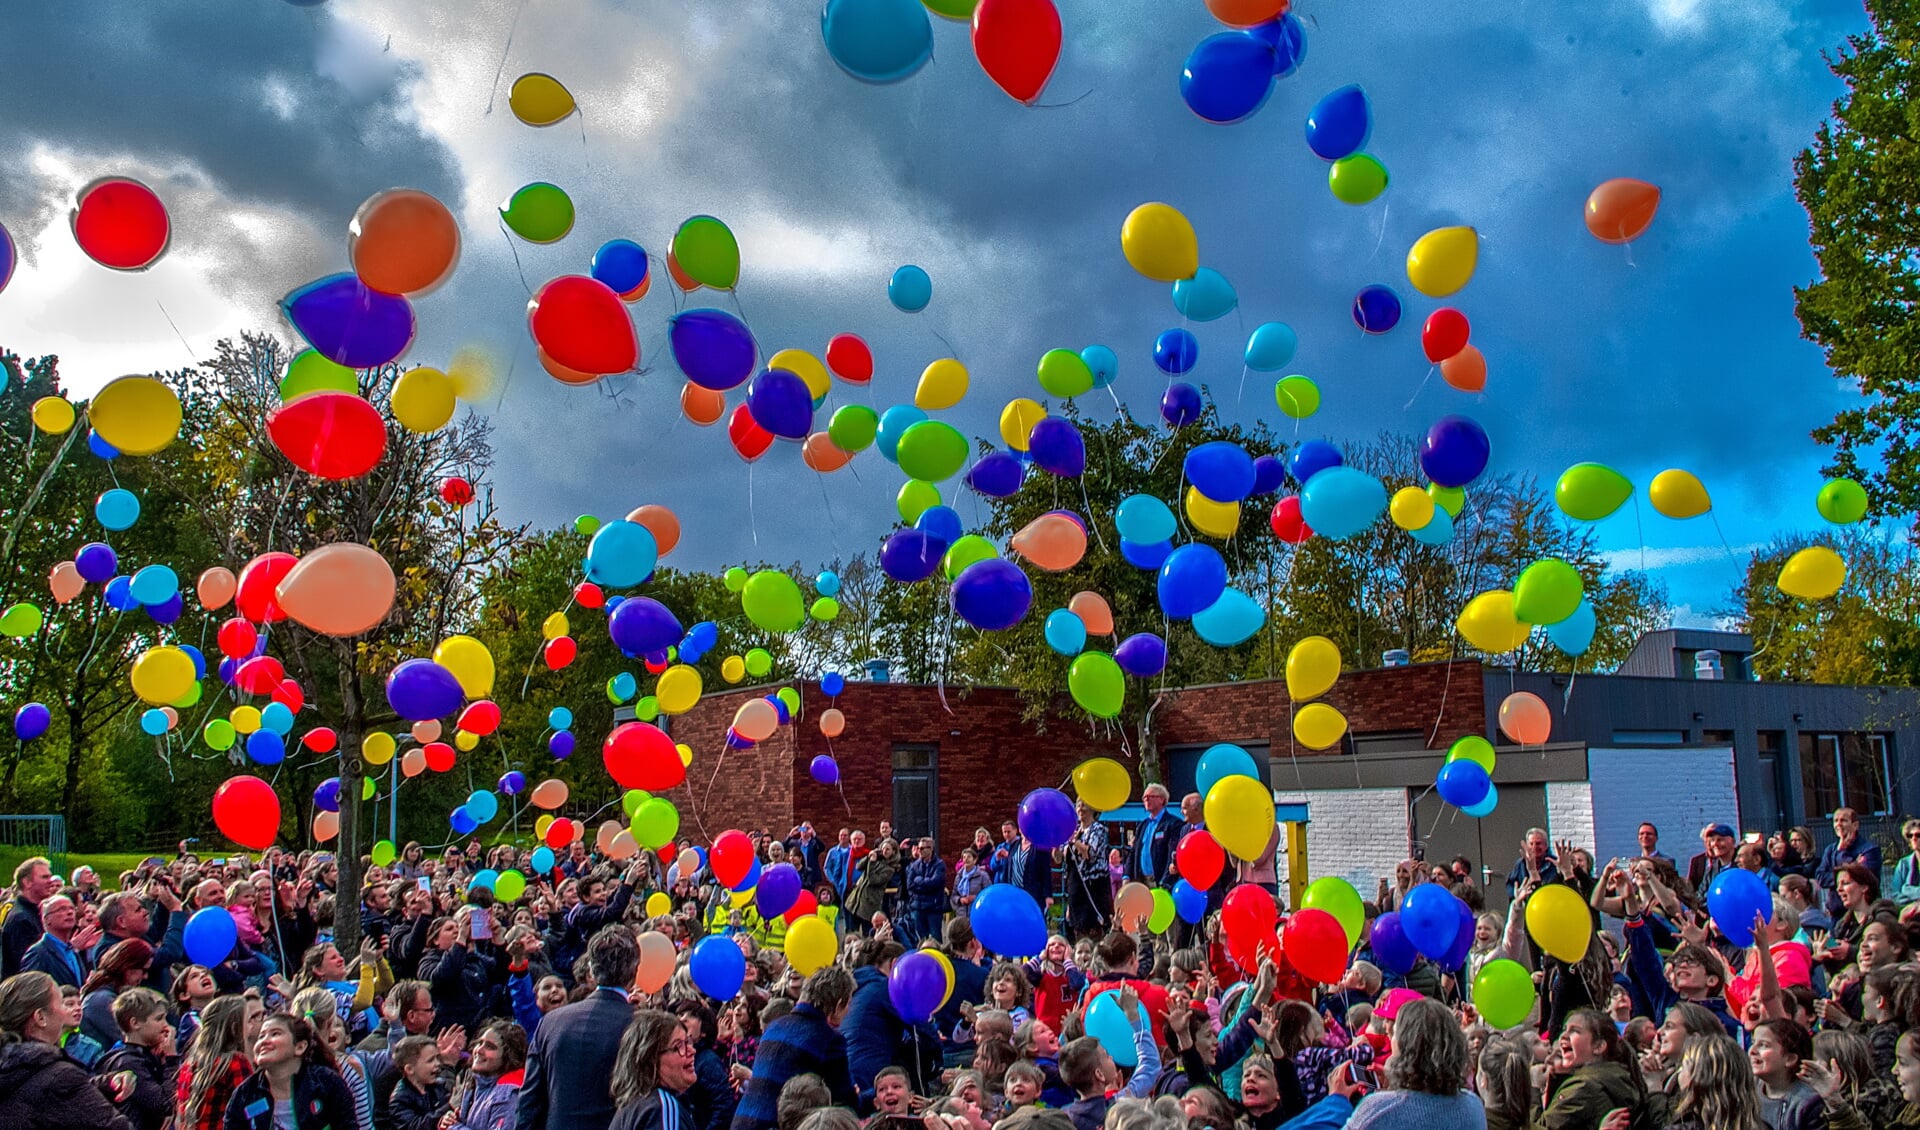 Honderden ballonnen gaan de lucht in. 